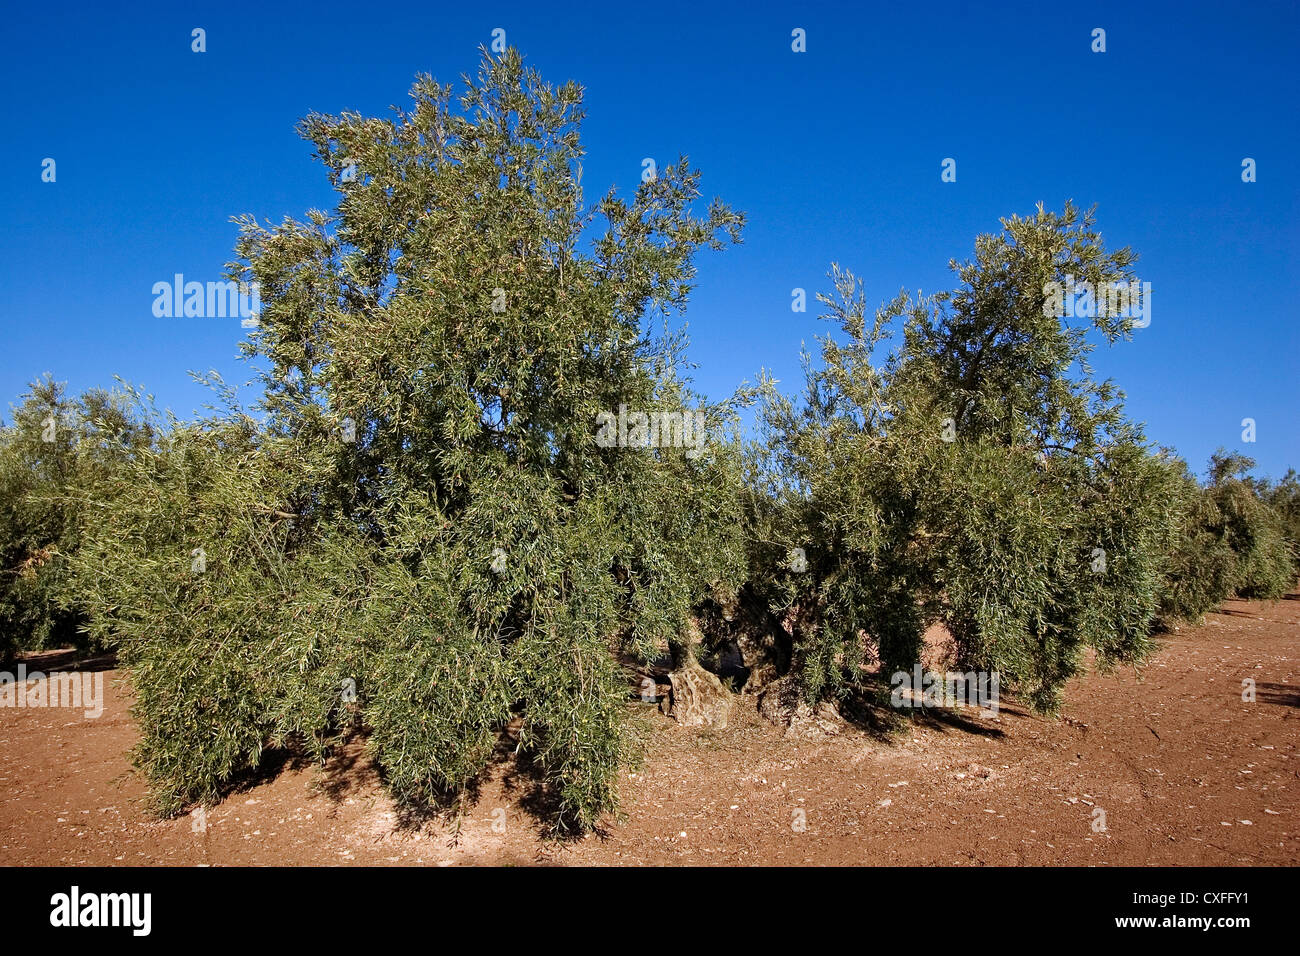 olive grove Antequera Malaga Andalusia Spain campo de olivos en la comarca de antequera malaga andalucia españa Stock Photo